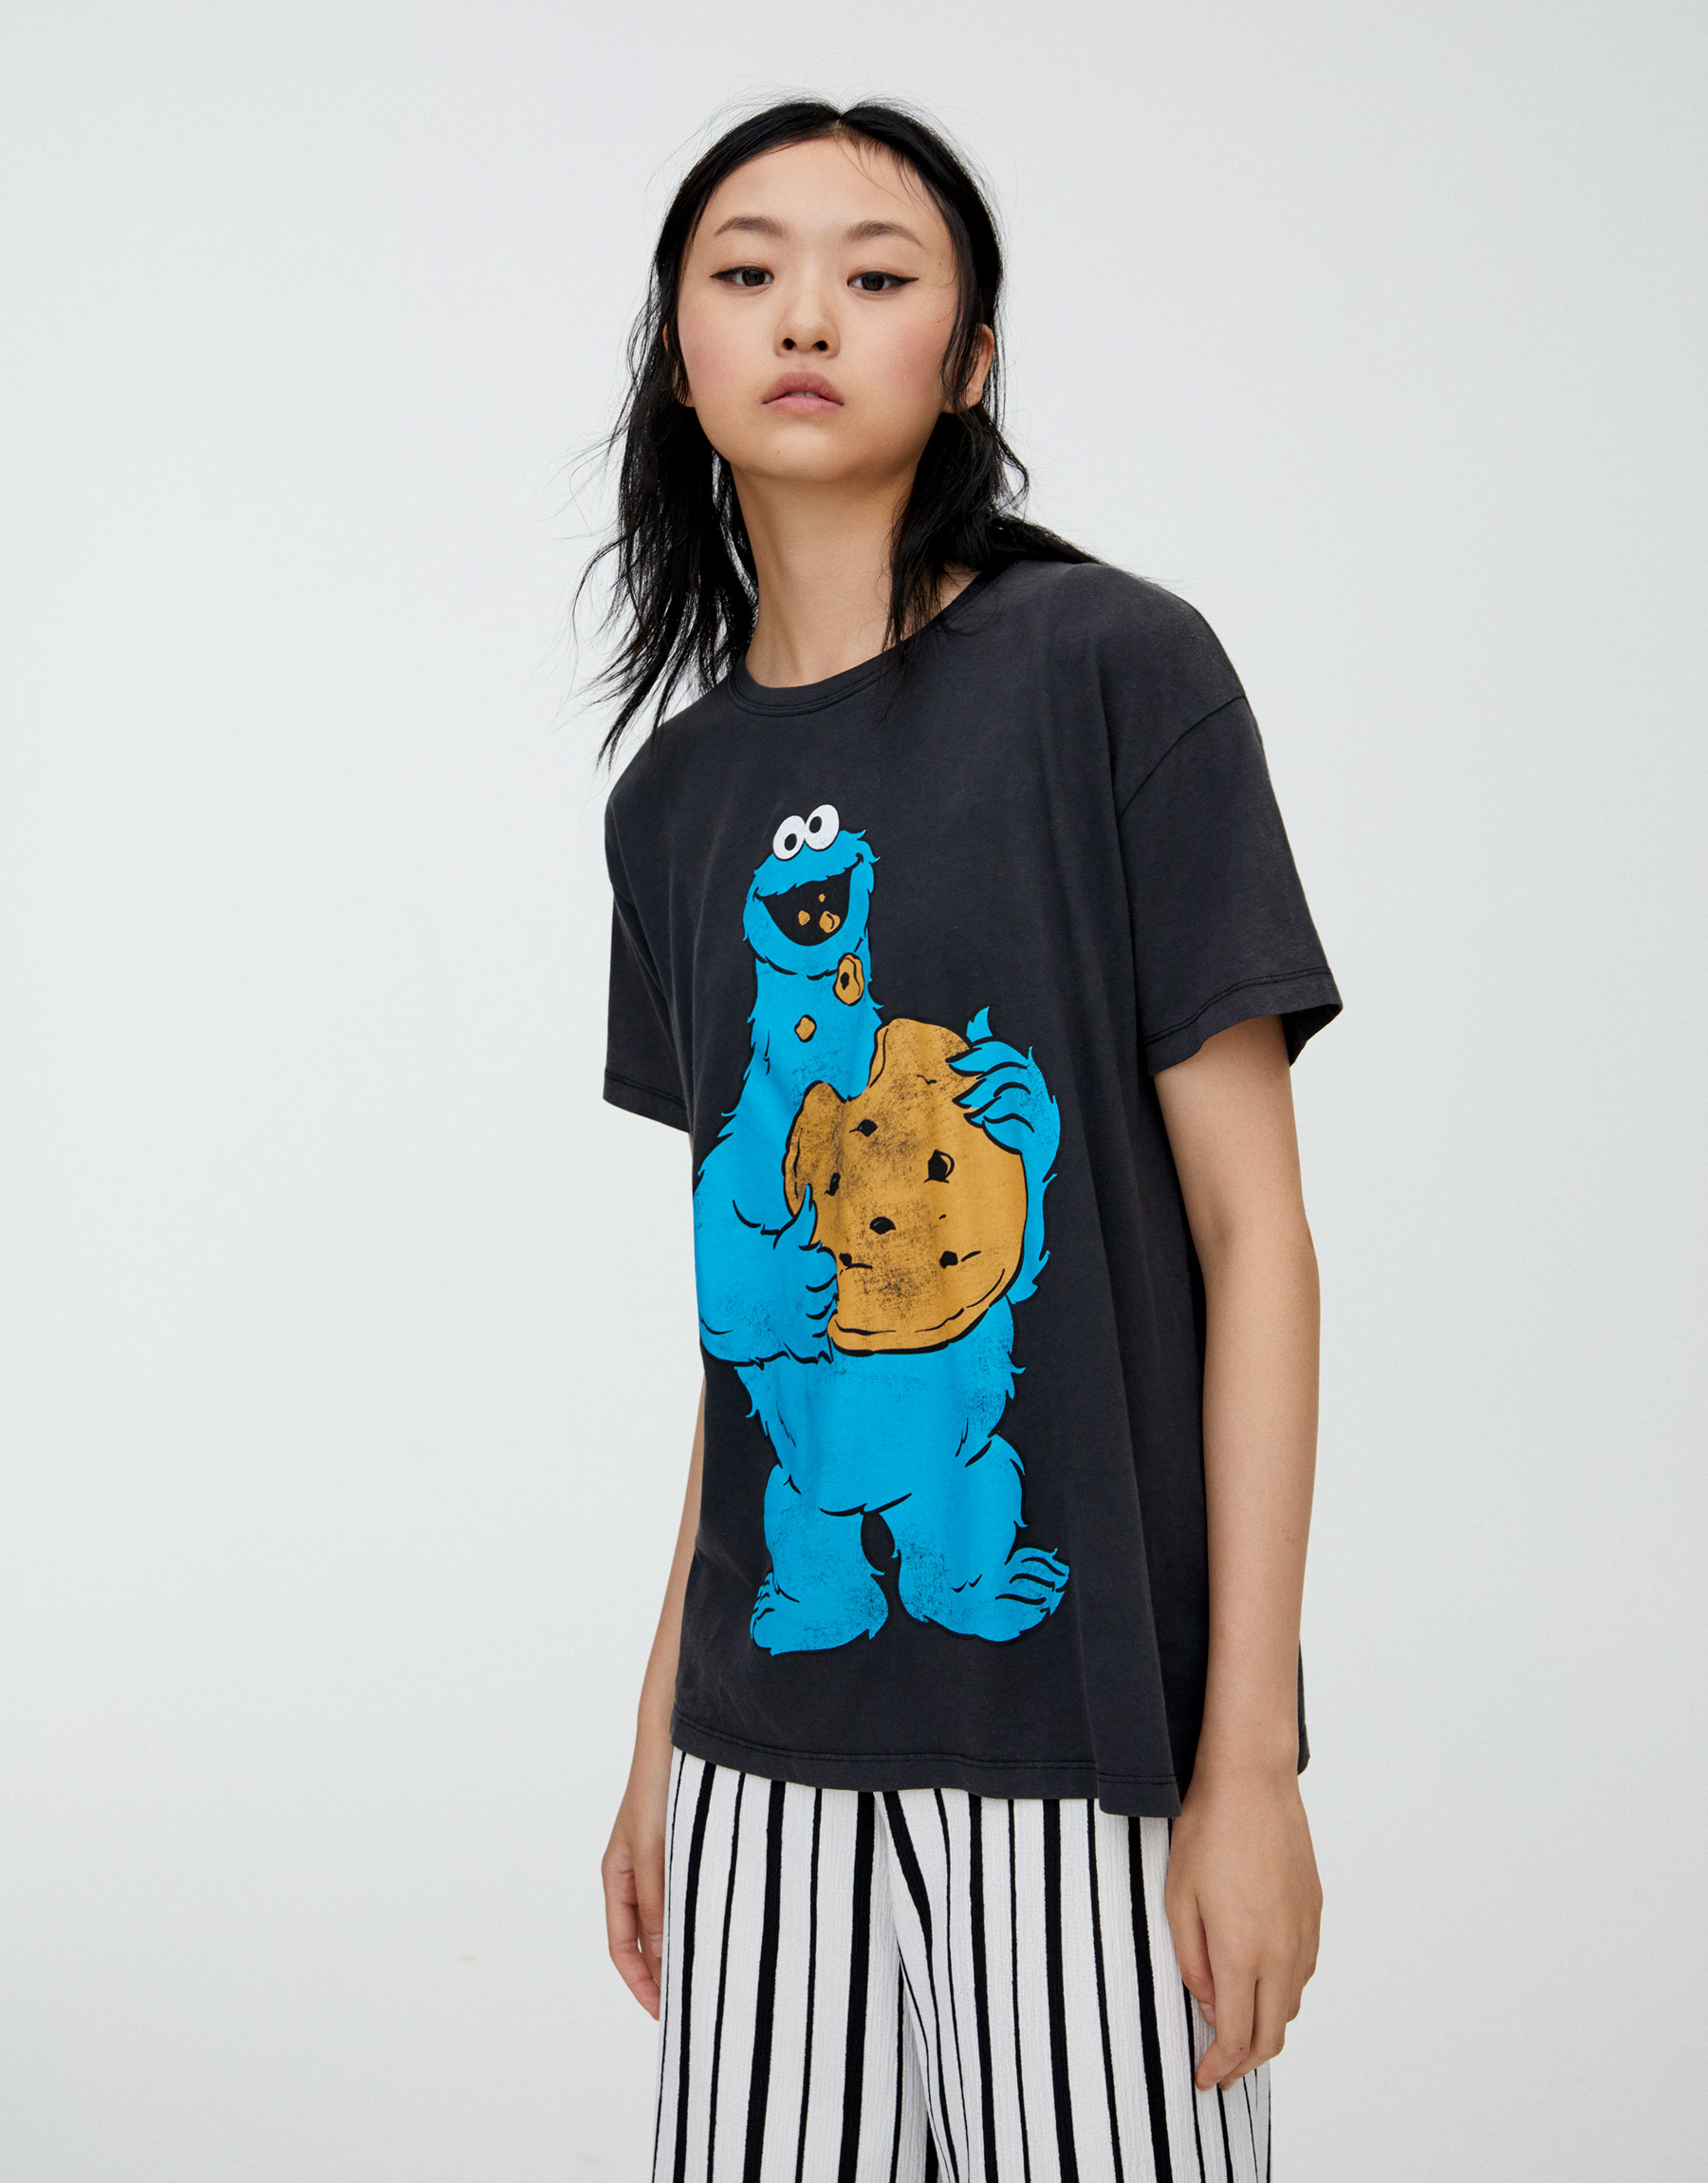 zara cookie monster shirt - OFF-60% Shipping